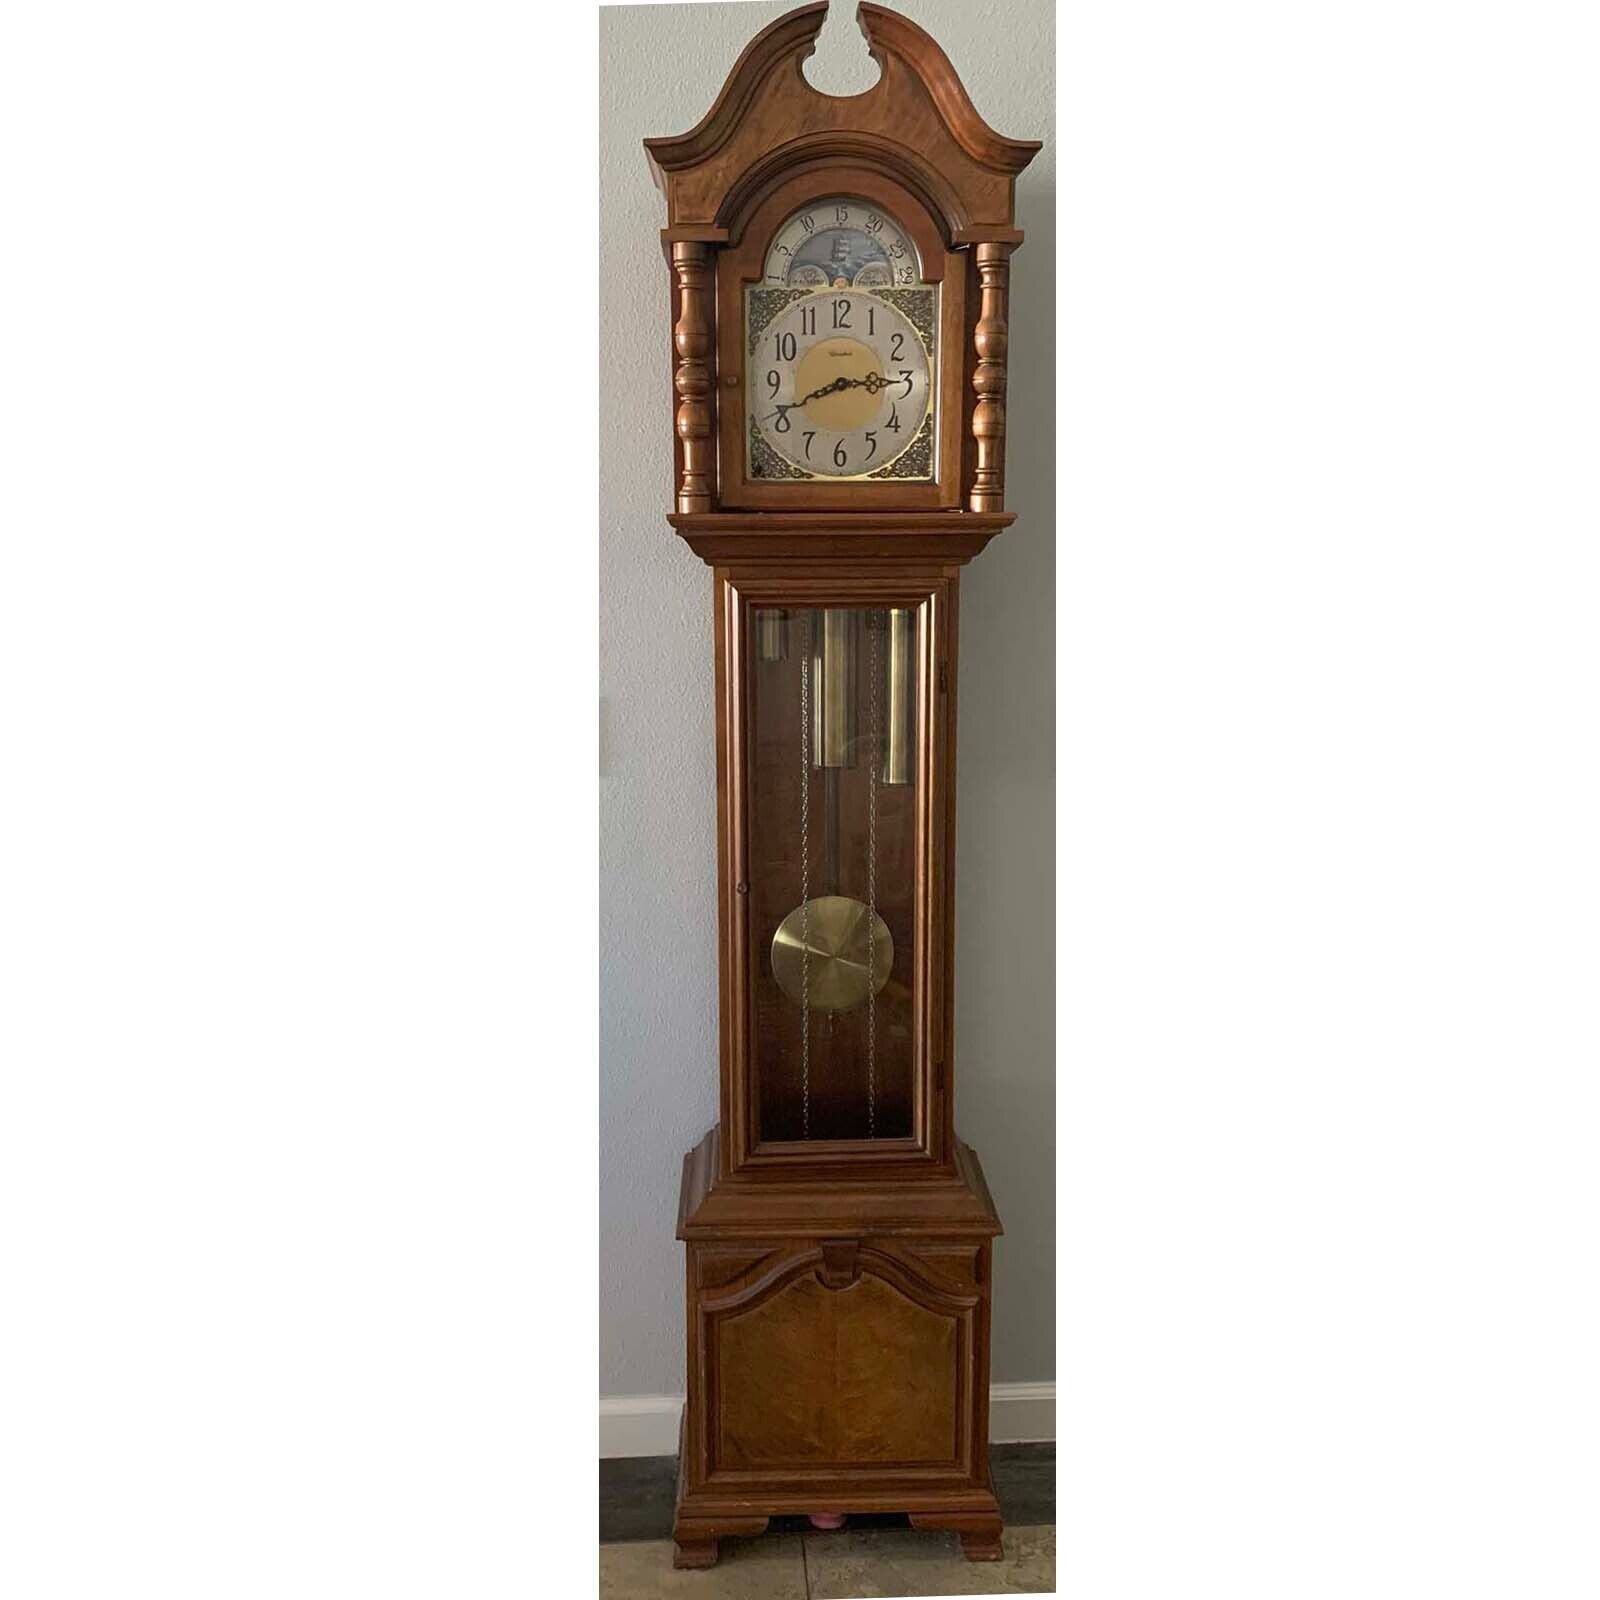 Vintage Herschede Revere #1205 Grandfather Clock - Needs TLC but works